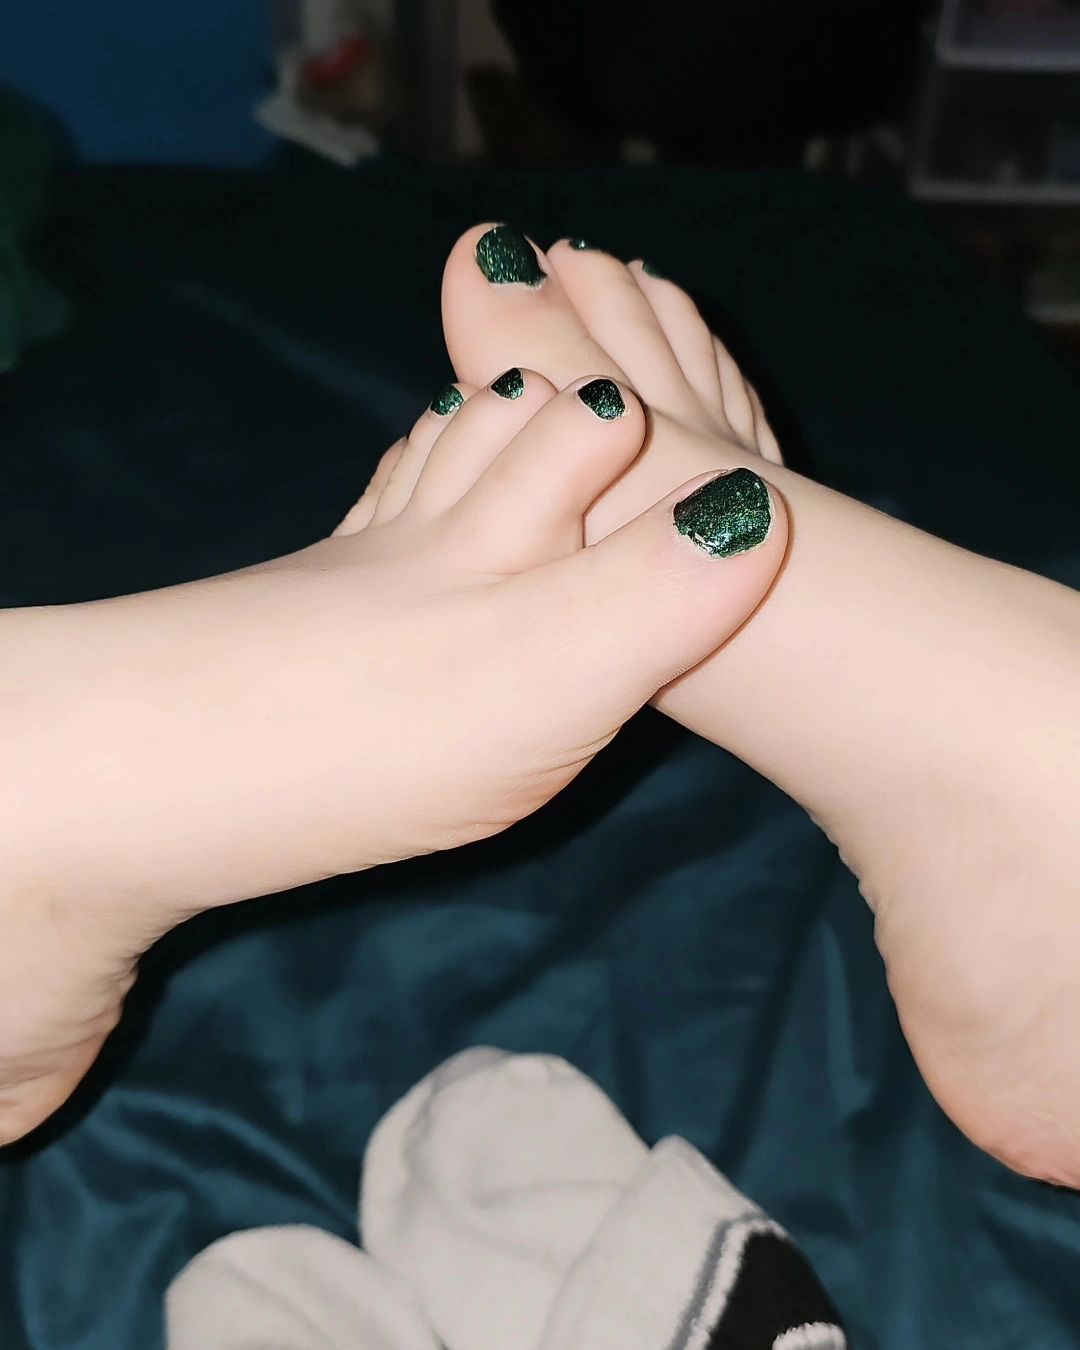 Your favorite toes are green rn 😋 
.
.
.
.
#toes #pied #pies #sp #fyp #socks #sock #foryou #explore #explorepage #viral #cutesocks #sockfetish #kneehighsocks #raventhefreak #onlyfansgirls #onlyfansgirl #transfeet